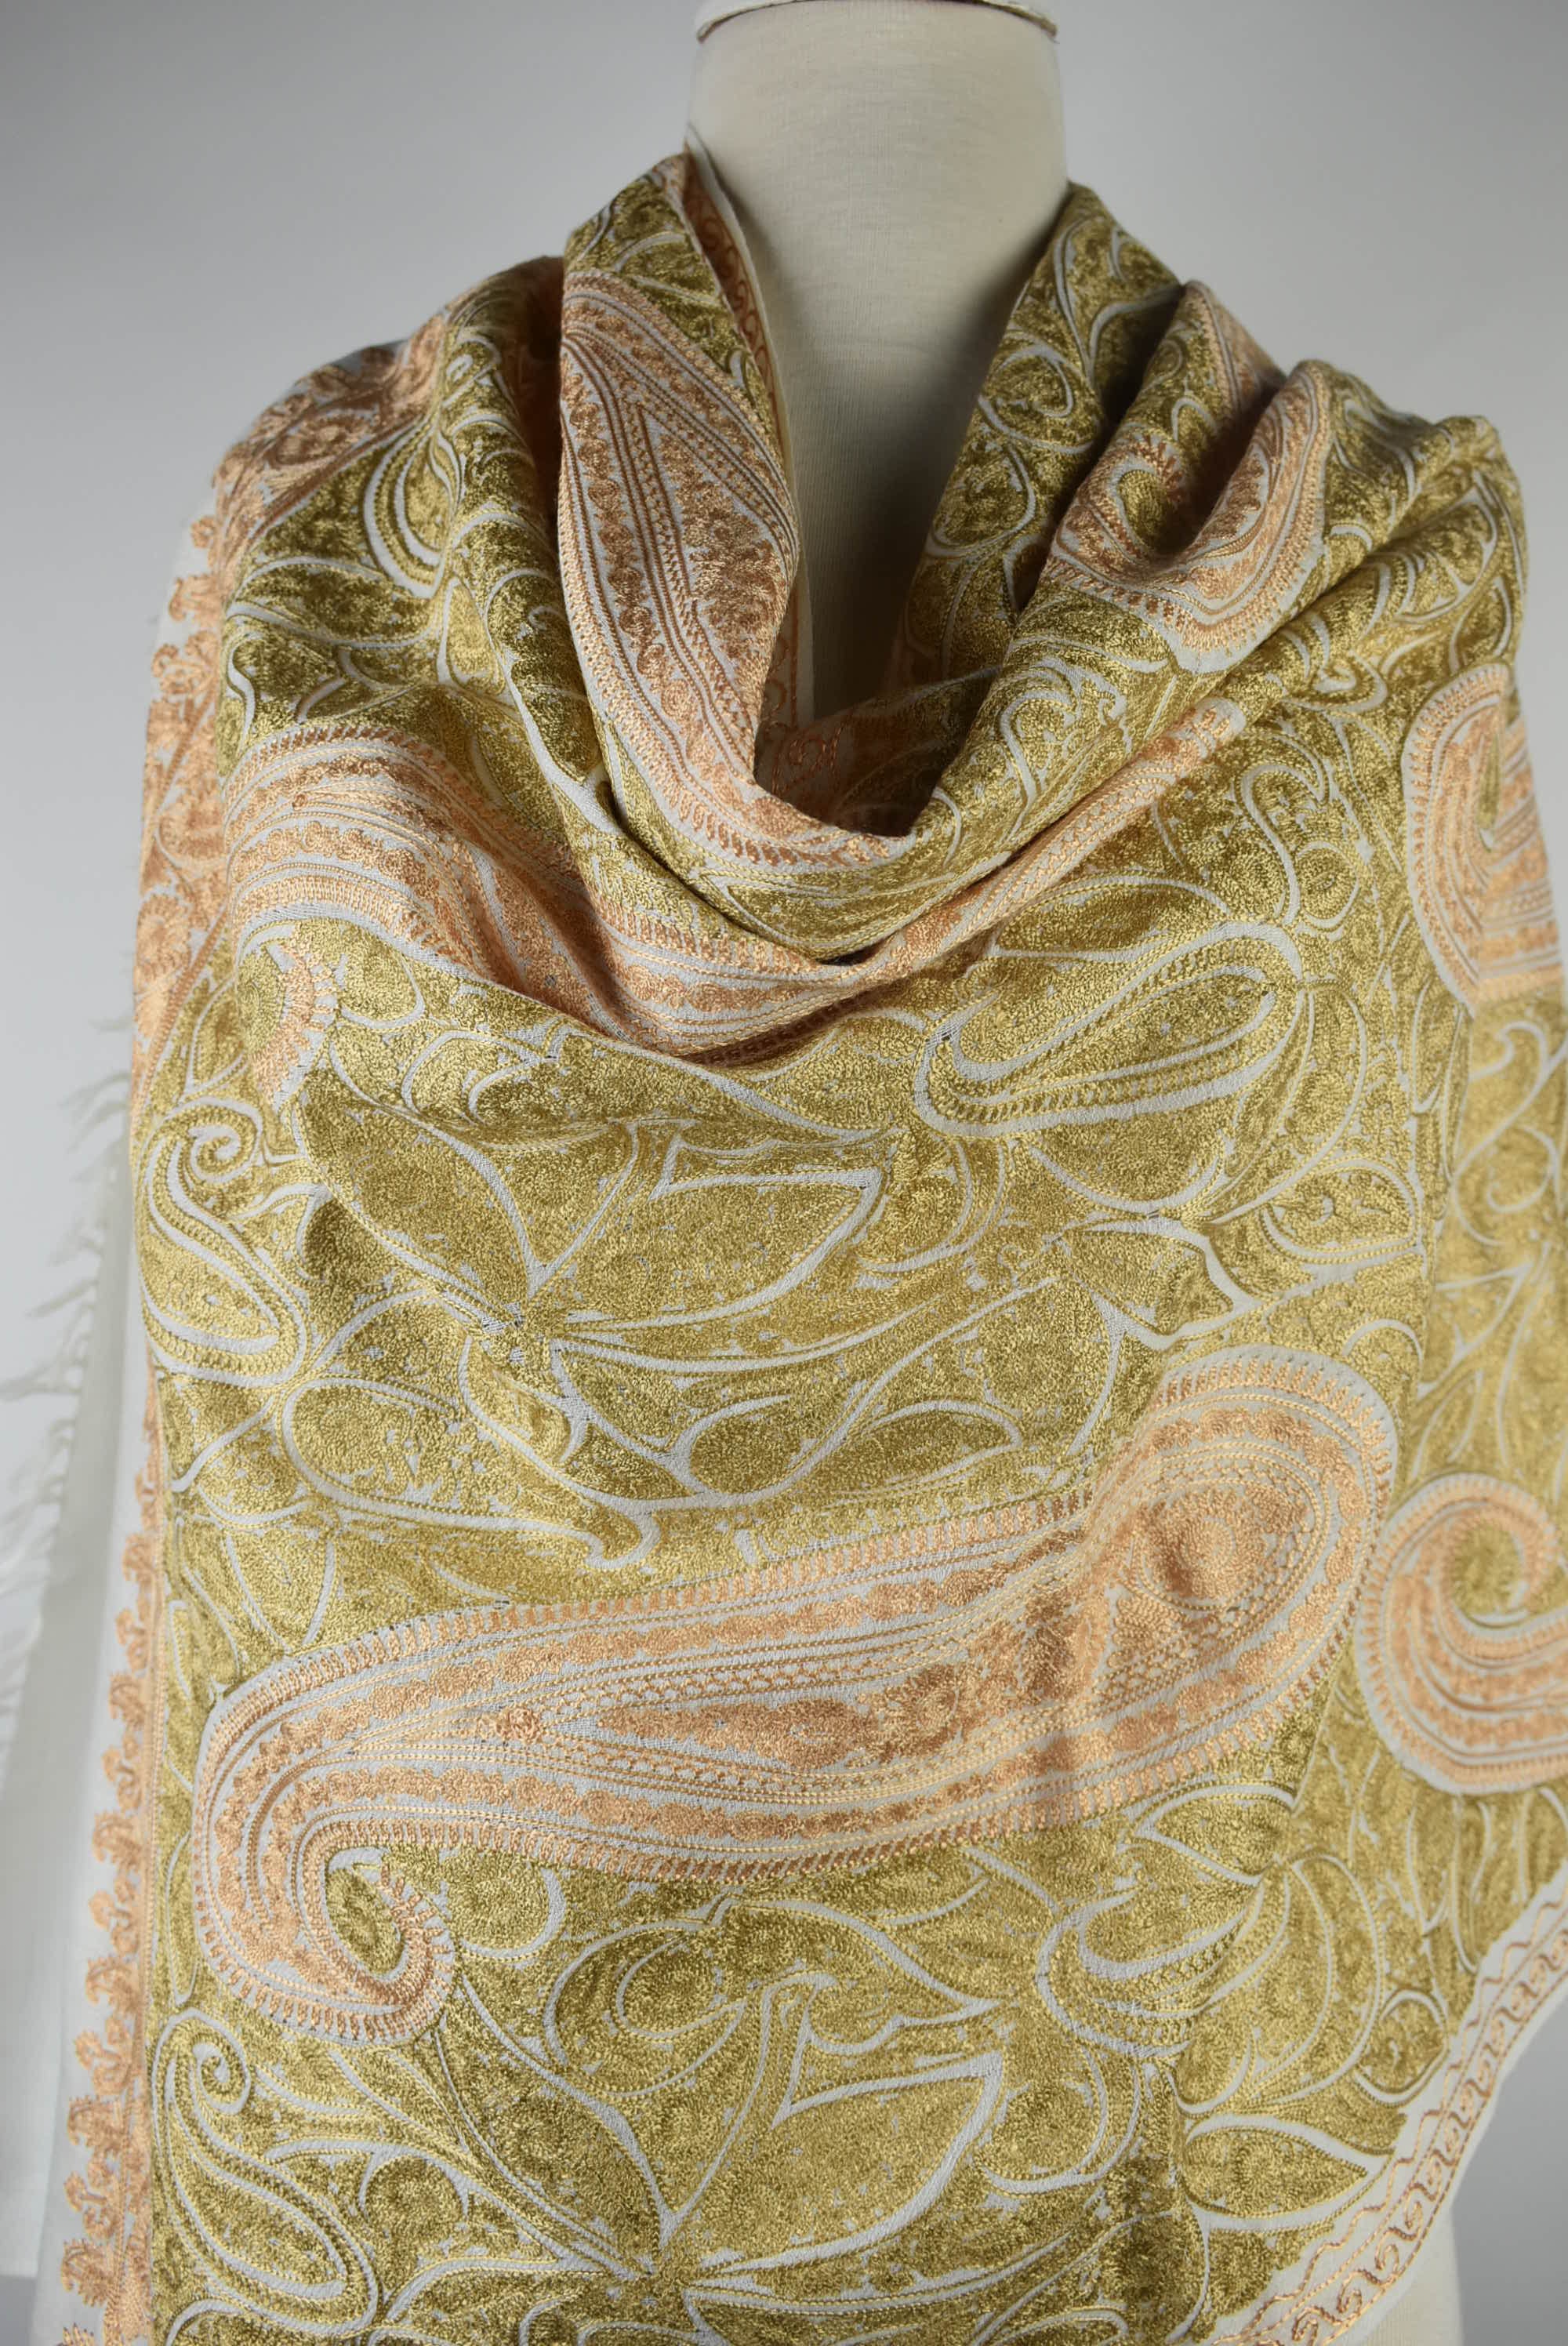 Wool Shawl Wrap Shawls and Wraps Embroidered Shawl Pashmina | Etsy